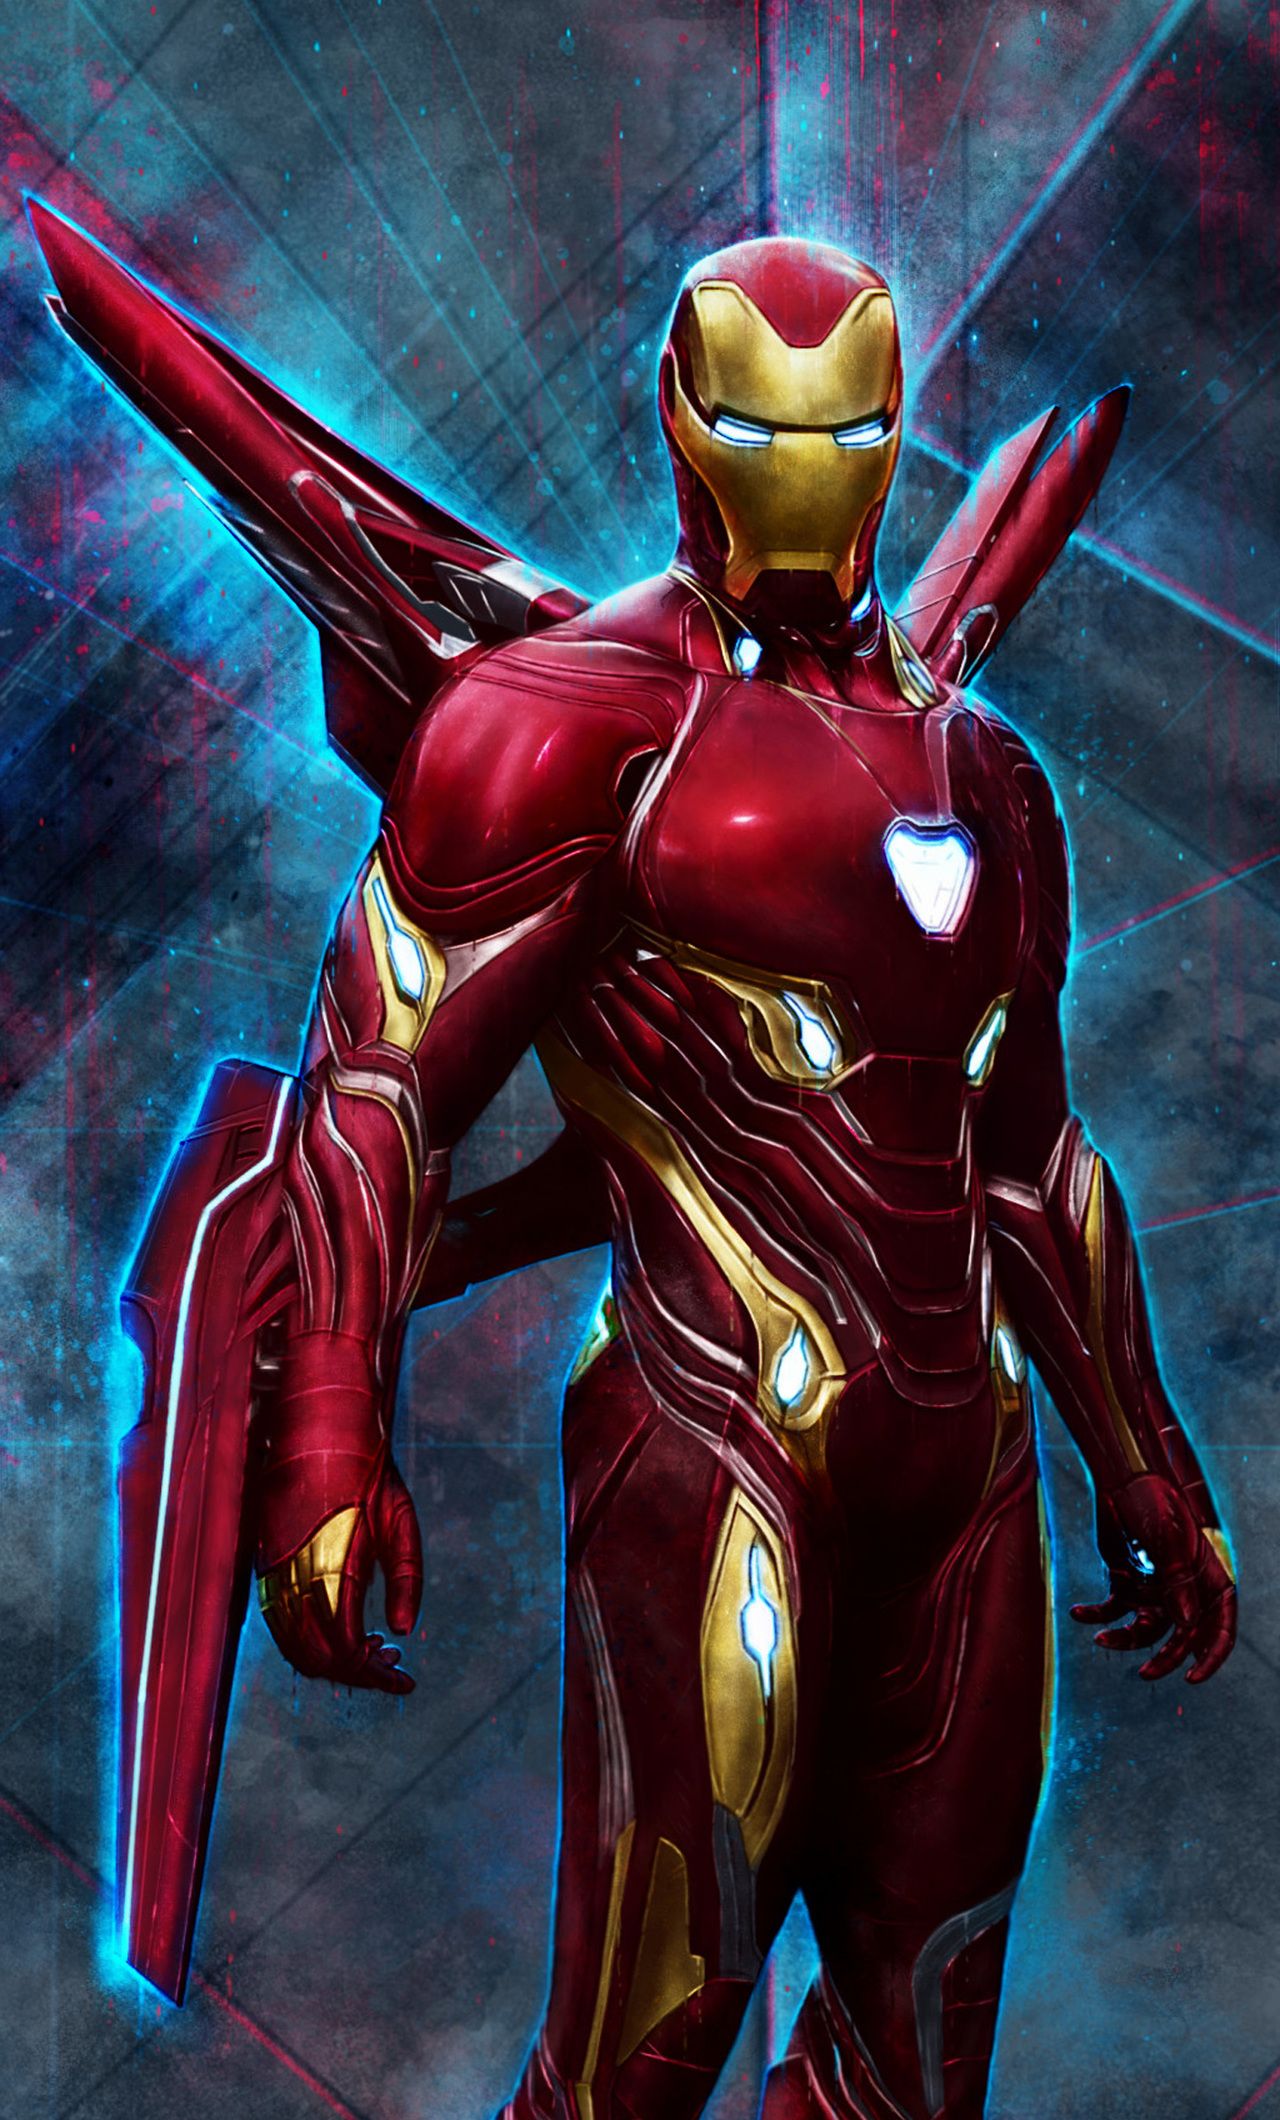 Thỏa mãn cơn khát hình ảnh của bạn với bộ sưu tập Hình Ảnh Người Sắt đầy ấn tượng và mạnh mẽ. Với những hình ảnh đầy quyền lực của Tony Stark và trang bị siêu năng lượng của ông ta, bạn sẽ được chứng kiến một siêu anh hùng thật sự hấp dẫn.